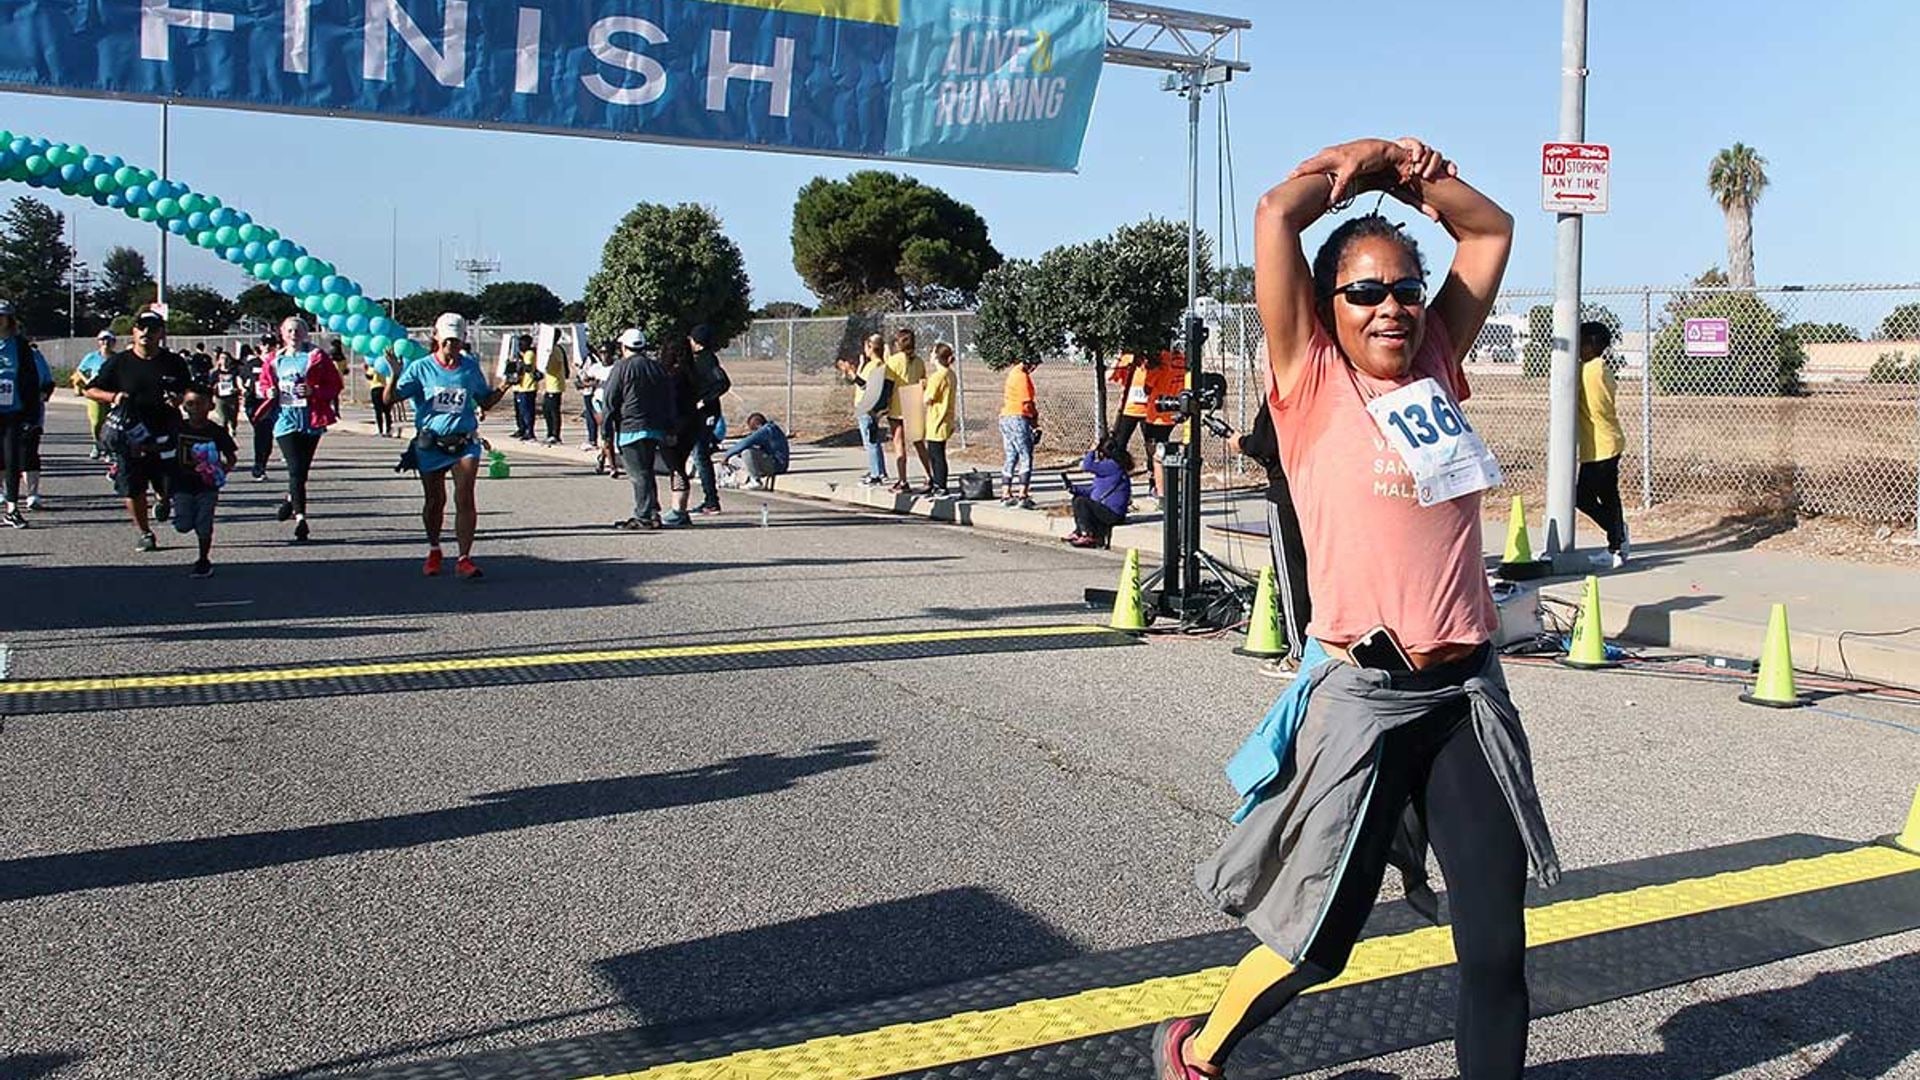 Мать Меган Маркл Дориа Редлан пробежала 5 км на соревнованиях в Лос-Анджелесе